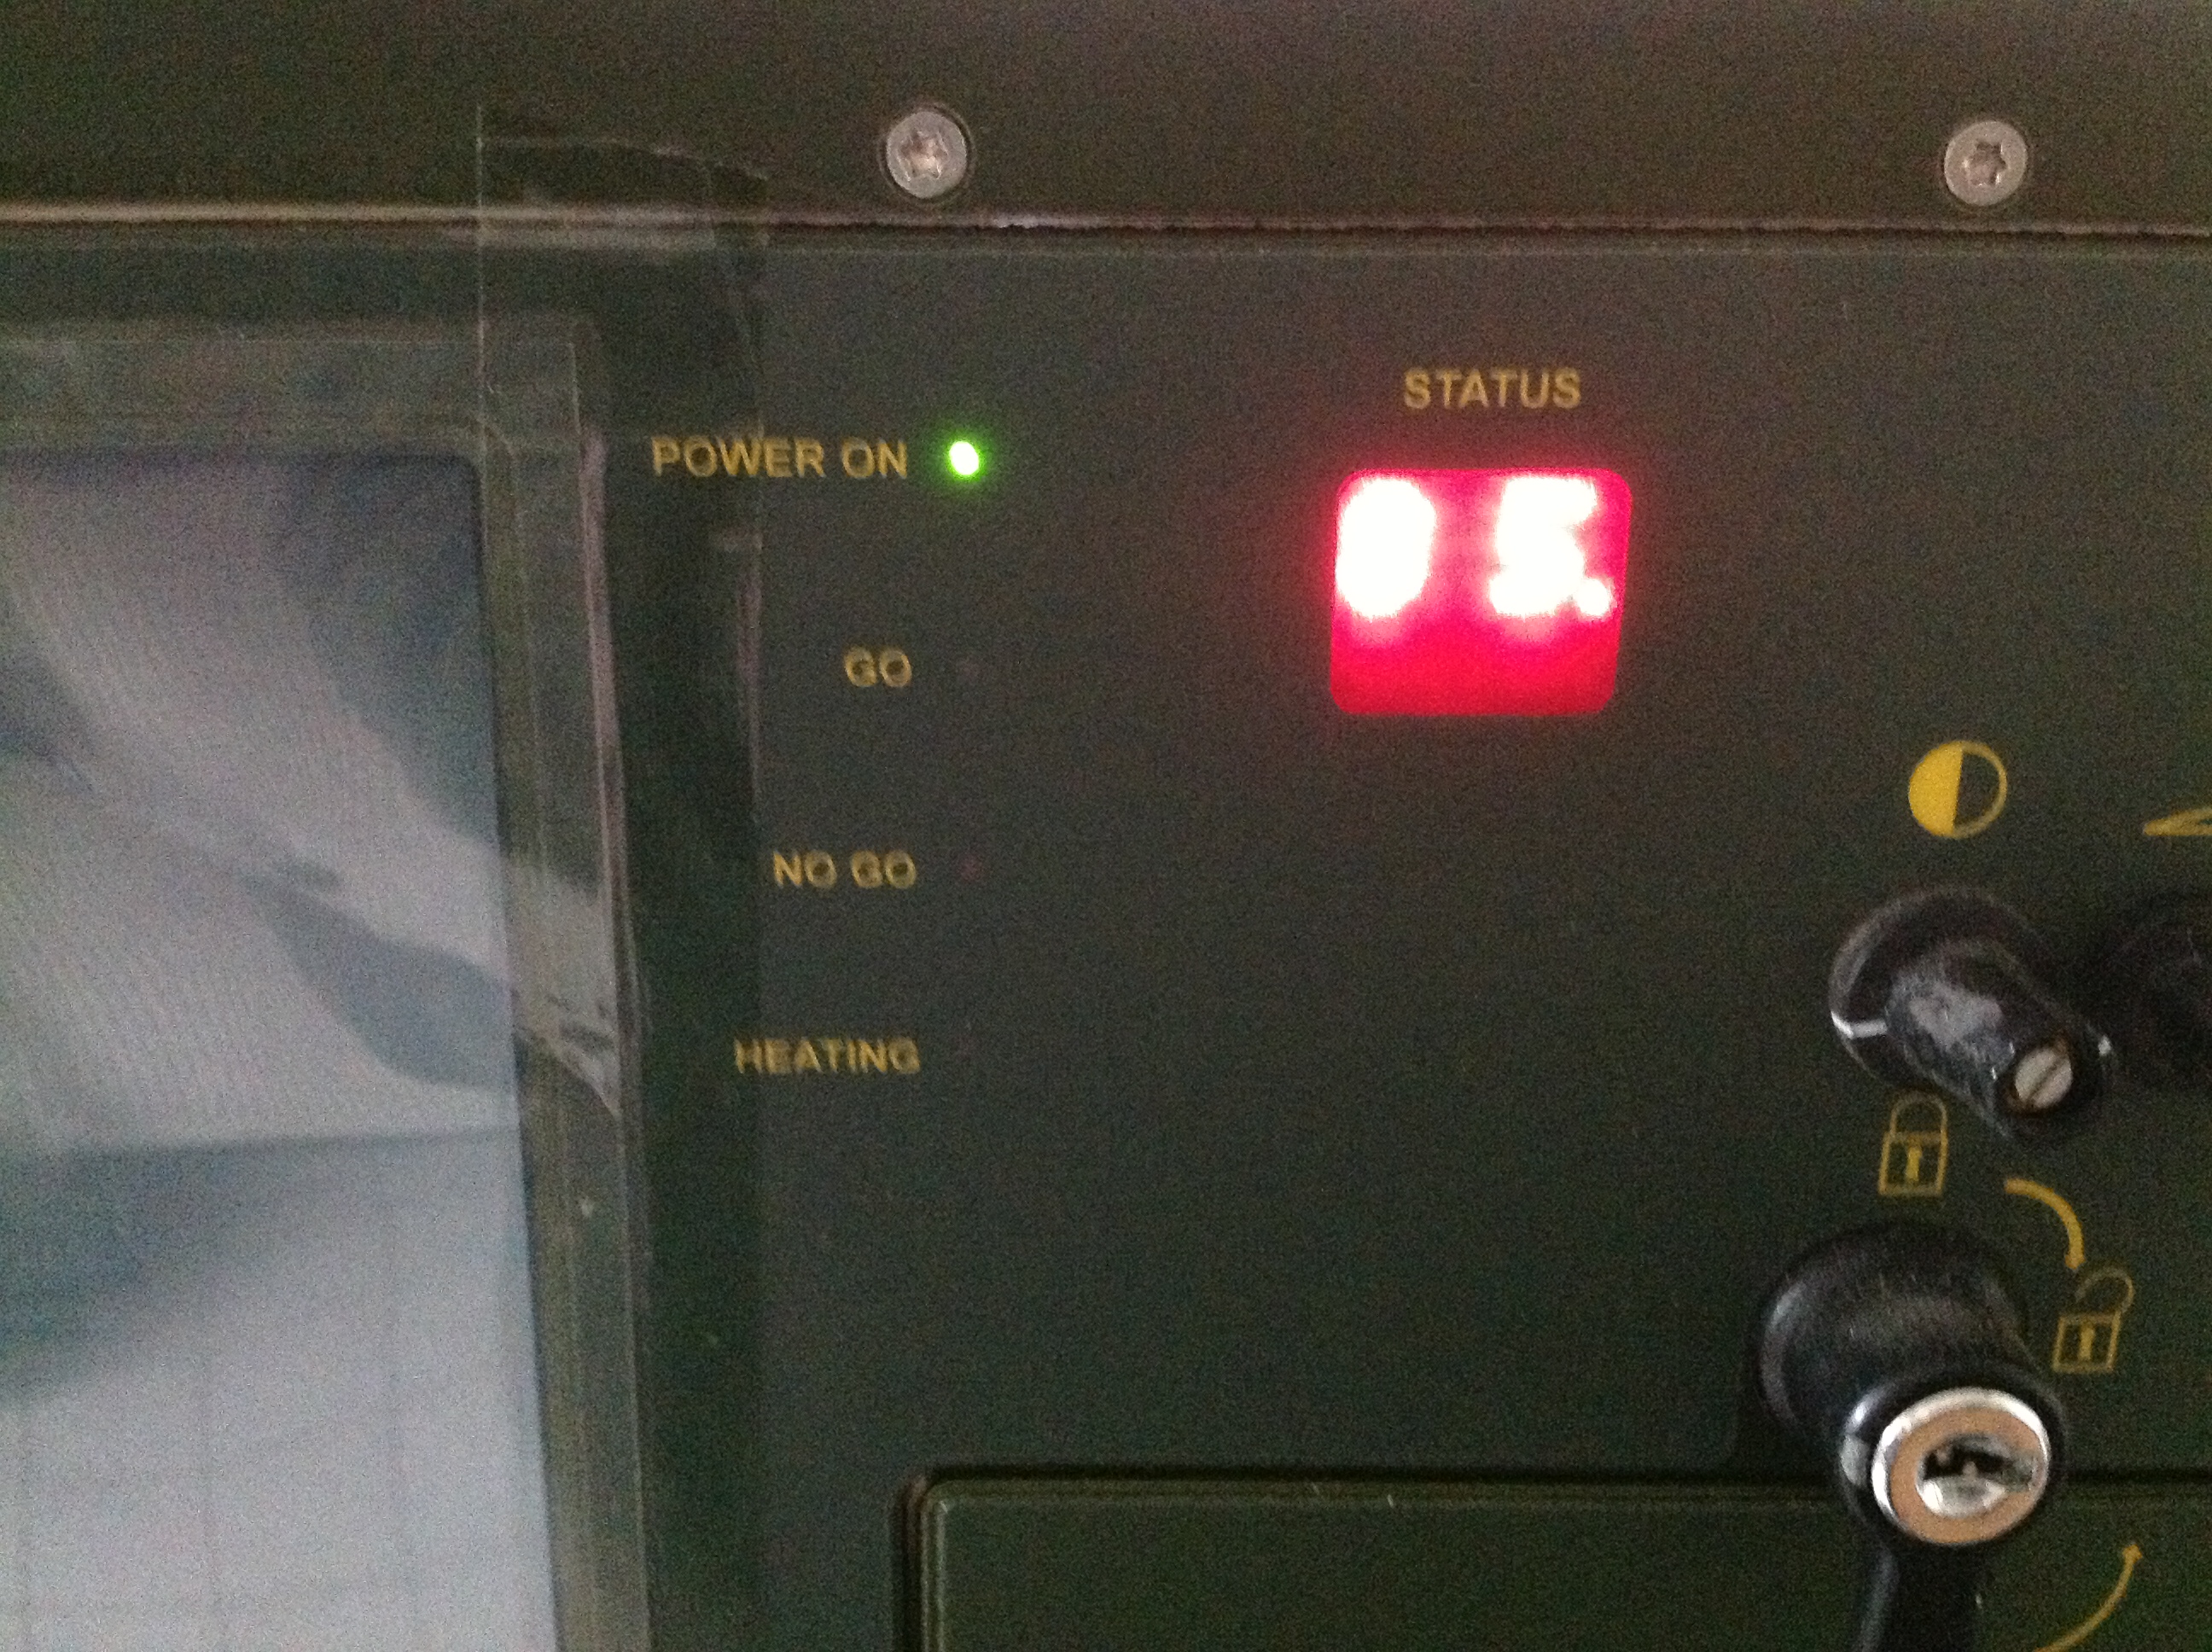 ATM-Rechner Typ MRC 400 ARES Terminal von der Raketenartellerie